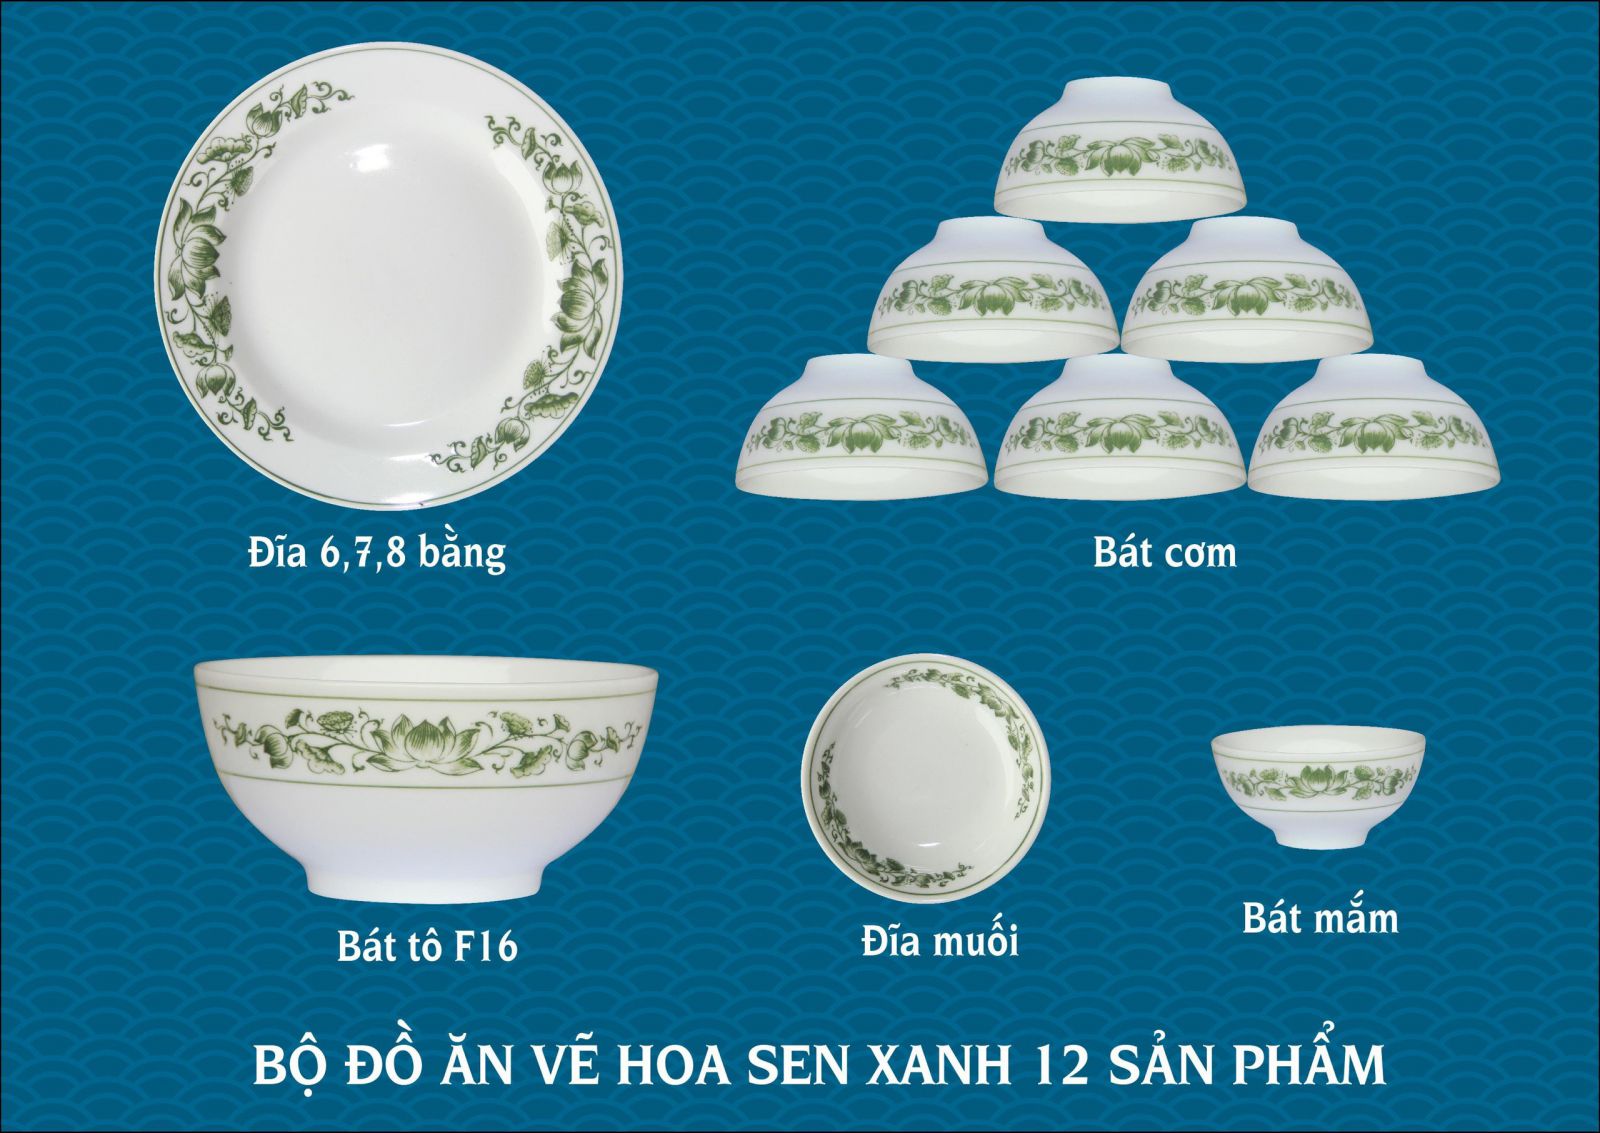 Những mẫu bát đĩa Bát Tràng phù hợp cho kinh doanh nhà hàng, khách sạn